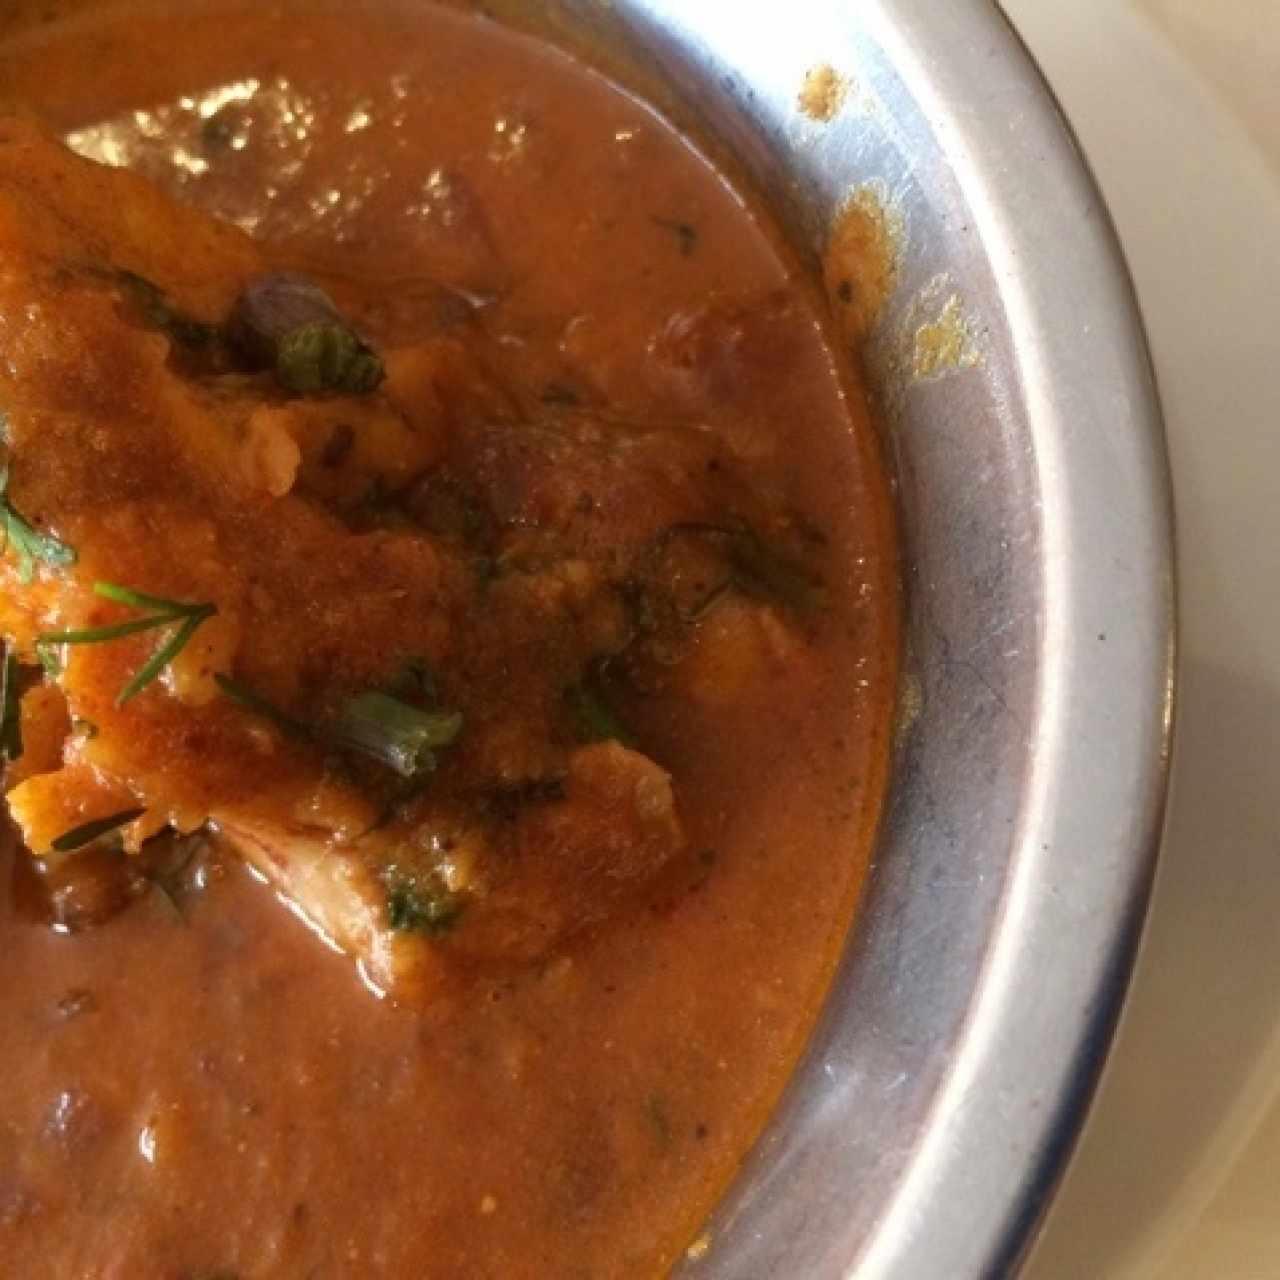 Pollo curry